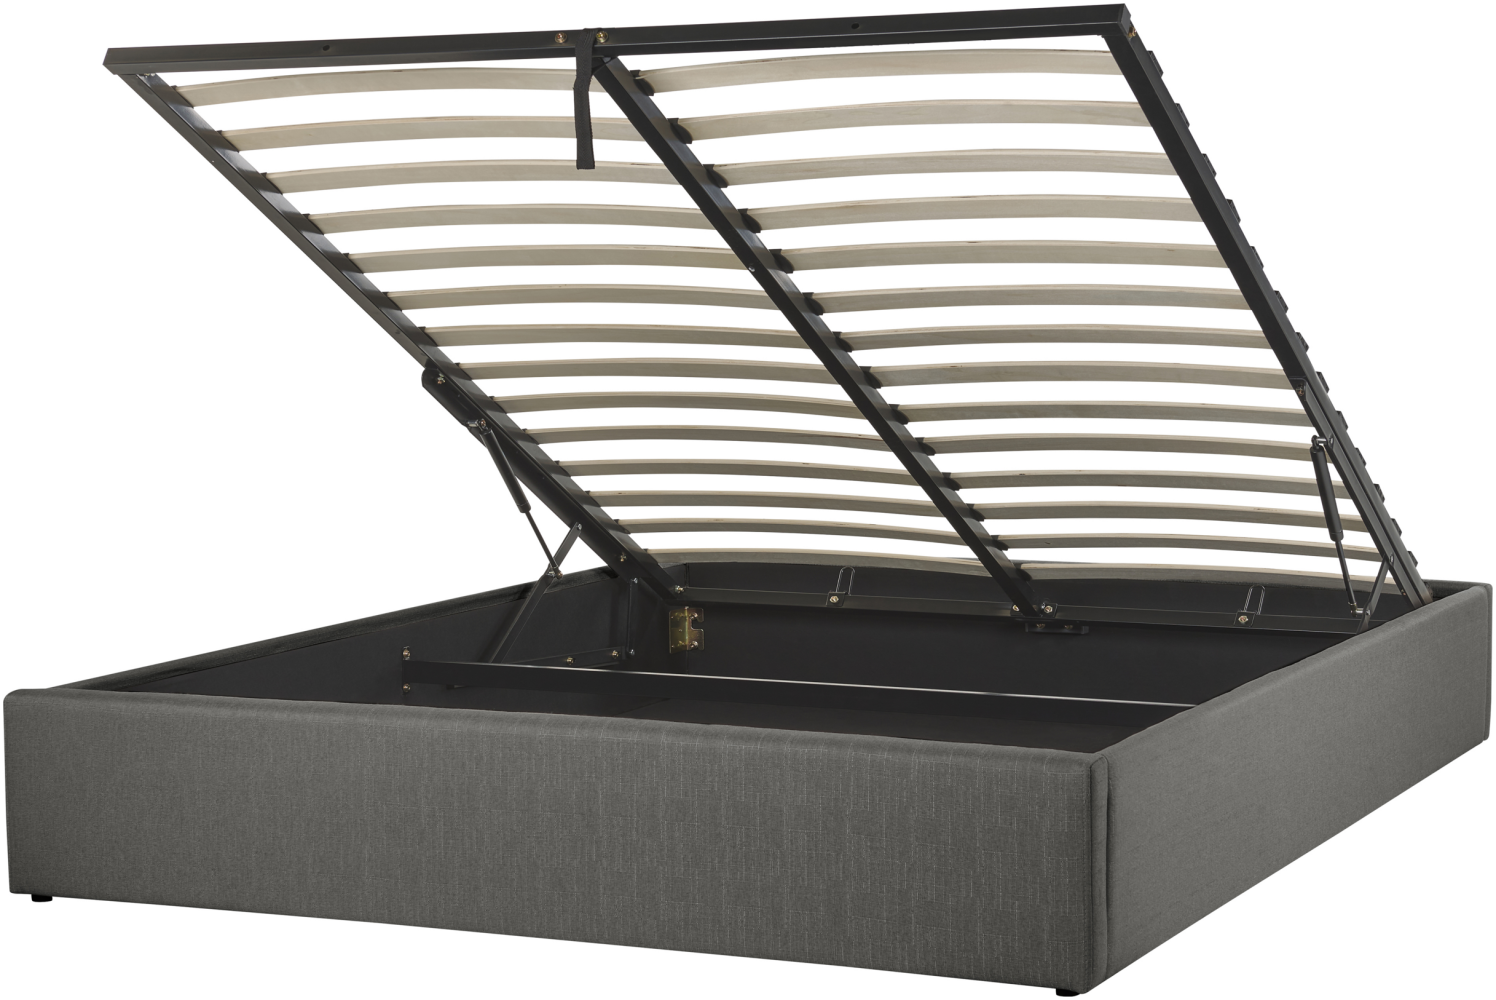 Polsterbett Leinenoptik grau mit Bettkasten hochklappbar 160 x 200 cm DINAN Bild 1